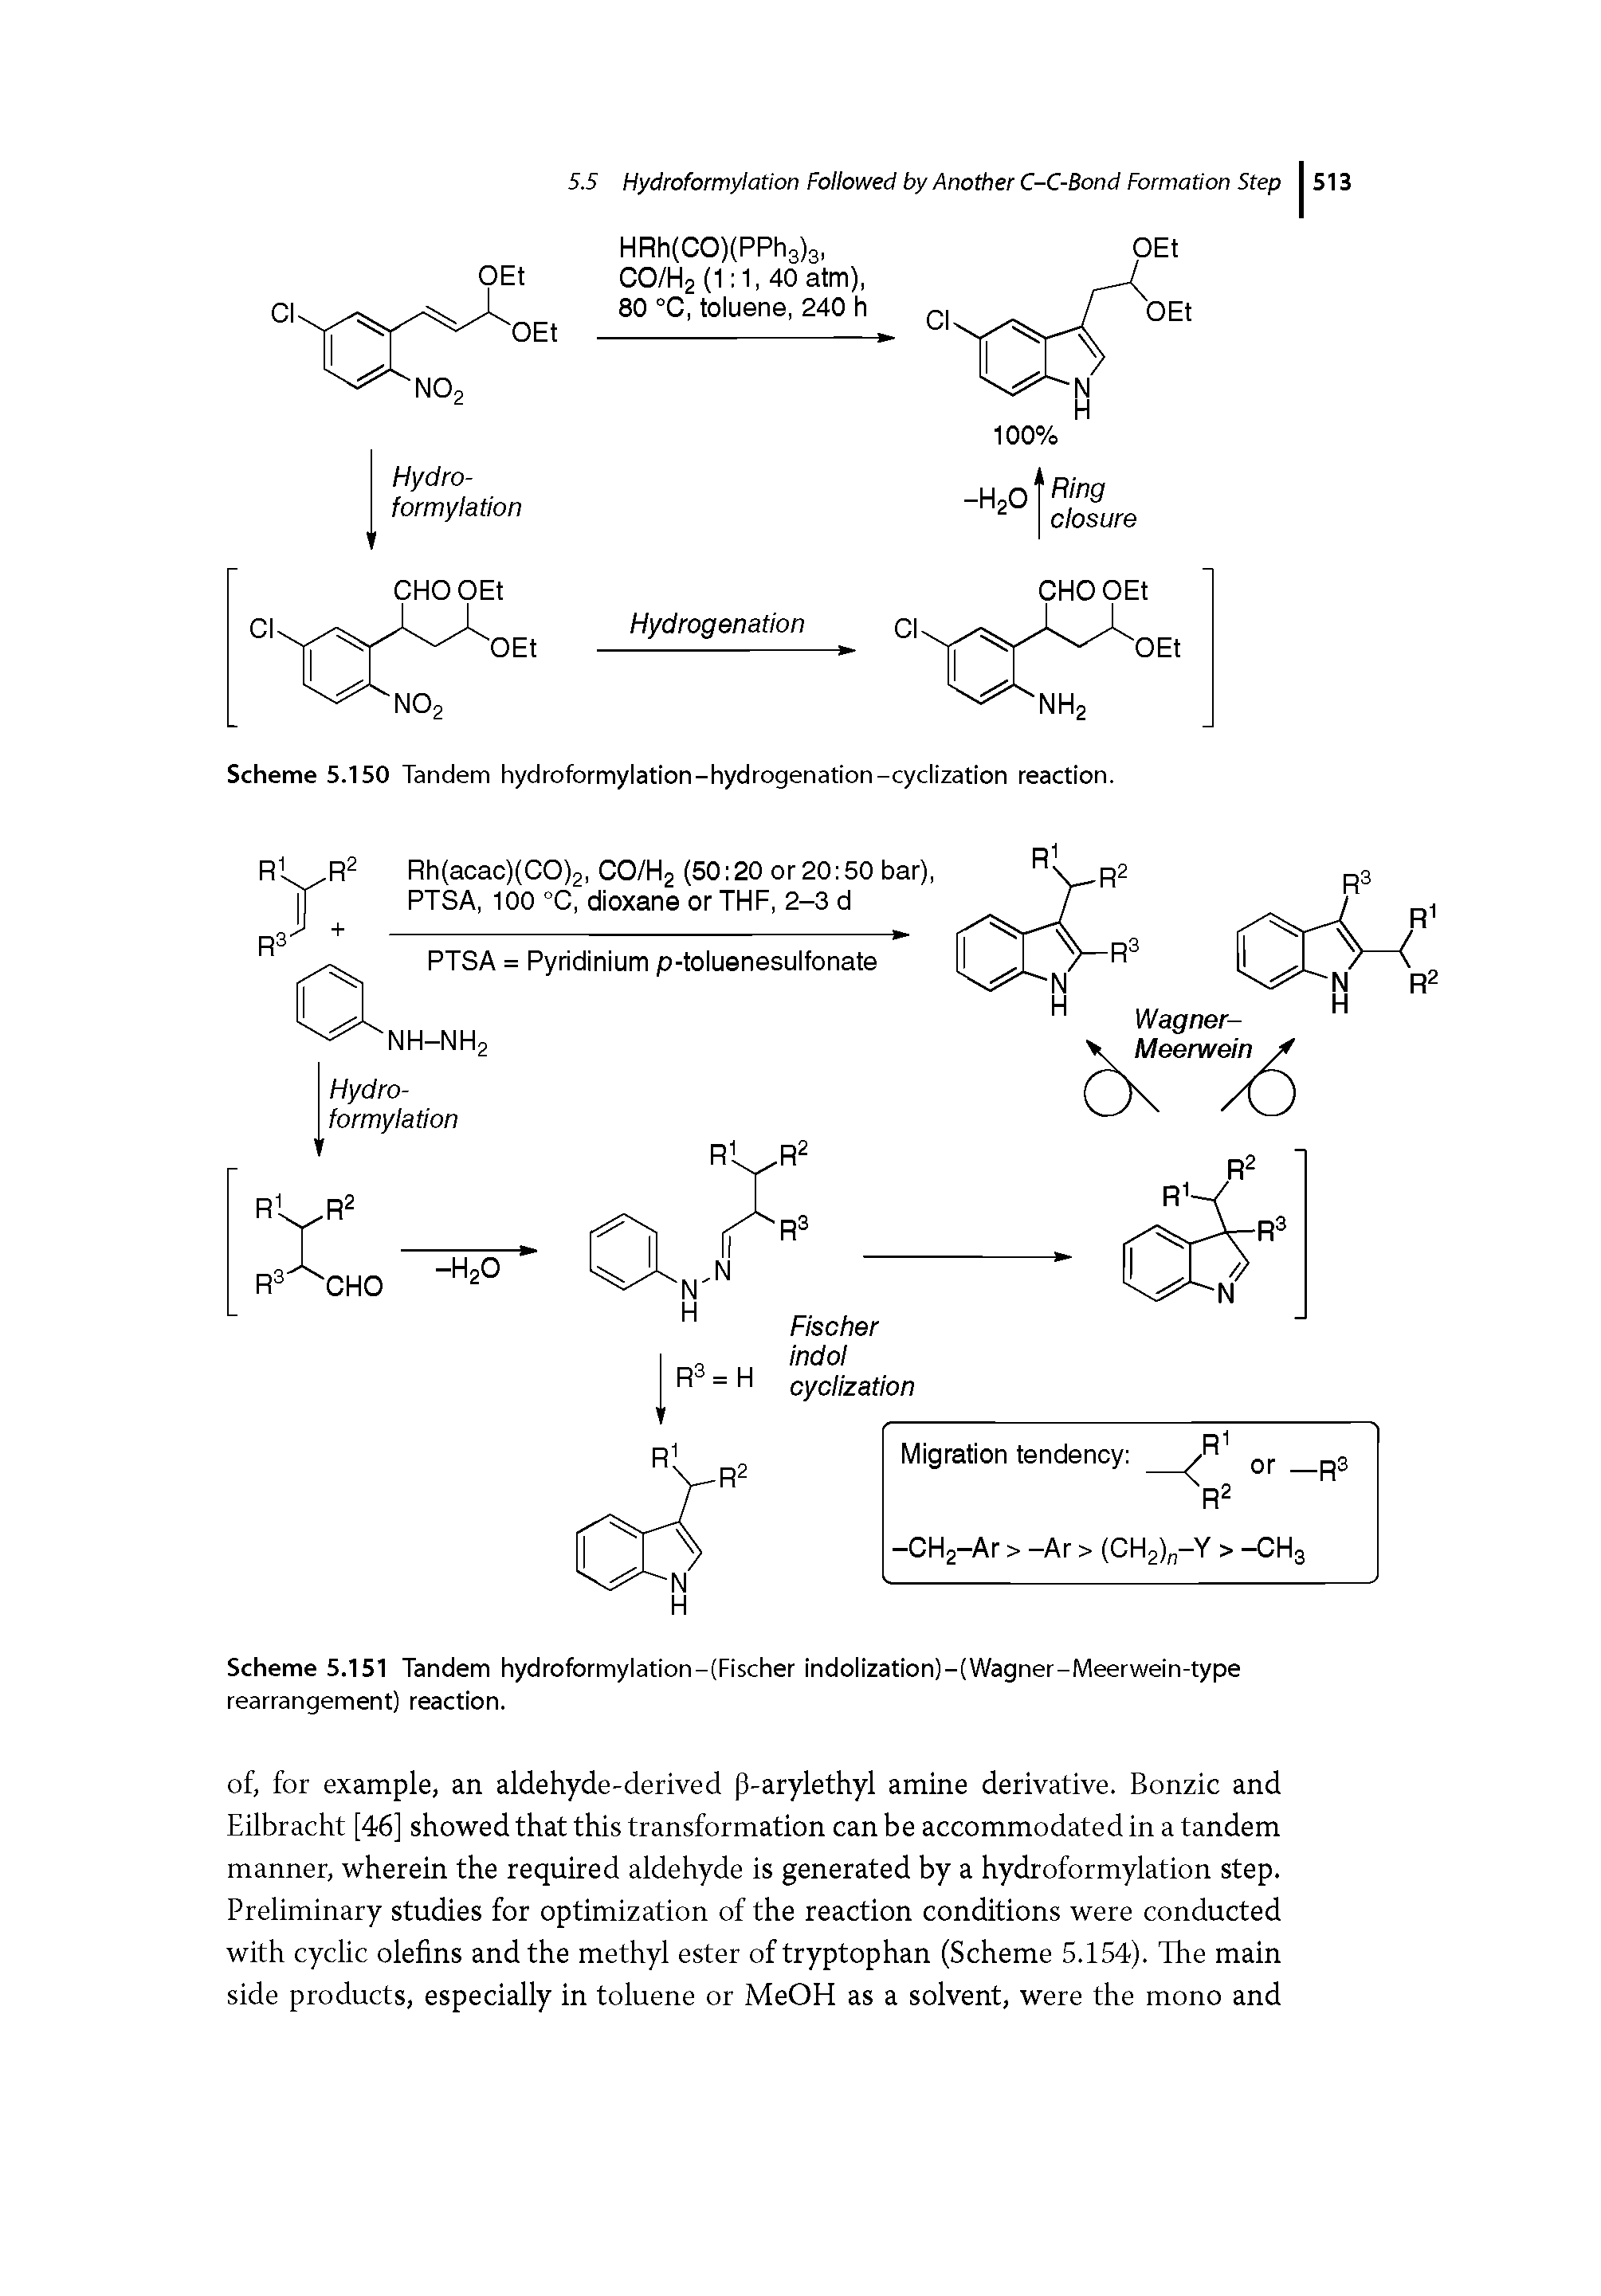 Scheme 5.151 Tandem hydroformylation-(Fischer indolization)-(Wagner-Meerwein-type rearrangement) reaction.